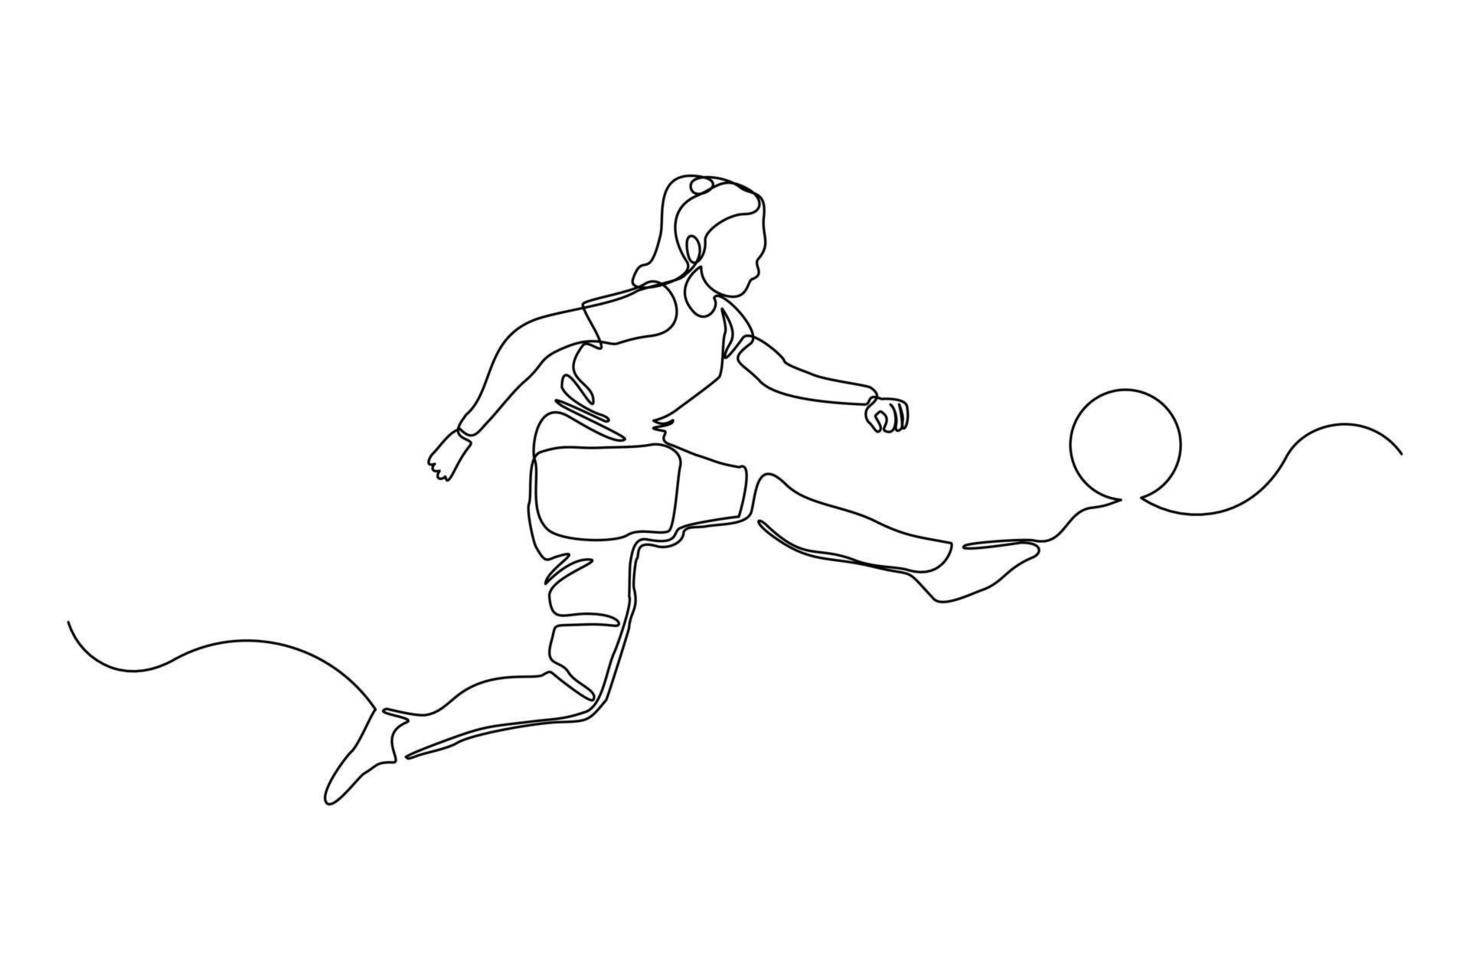 disegno a tratteggio continuo del giocatore di football che dà dei calci alla palla. singola linea d'arte di una giovane donna che gioca a calcio dribbling e giocoleria con la palla. illustrazione vettoriale